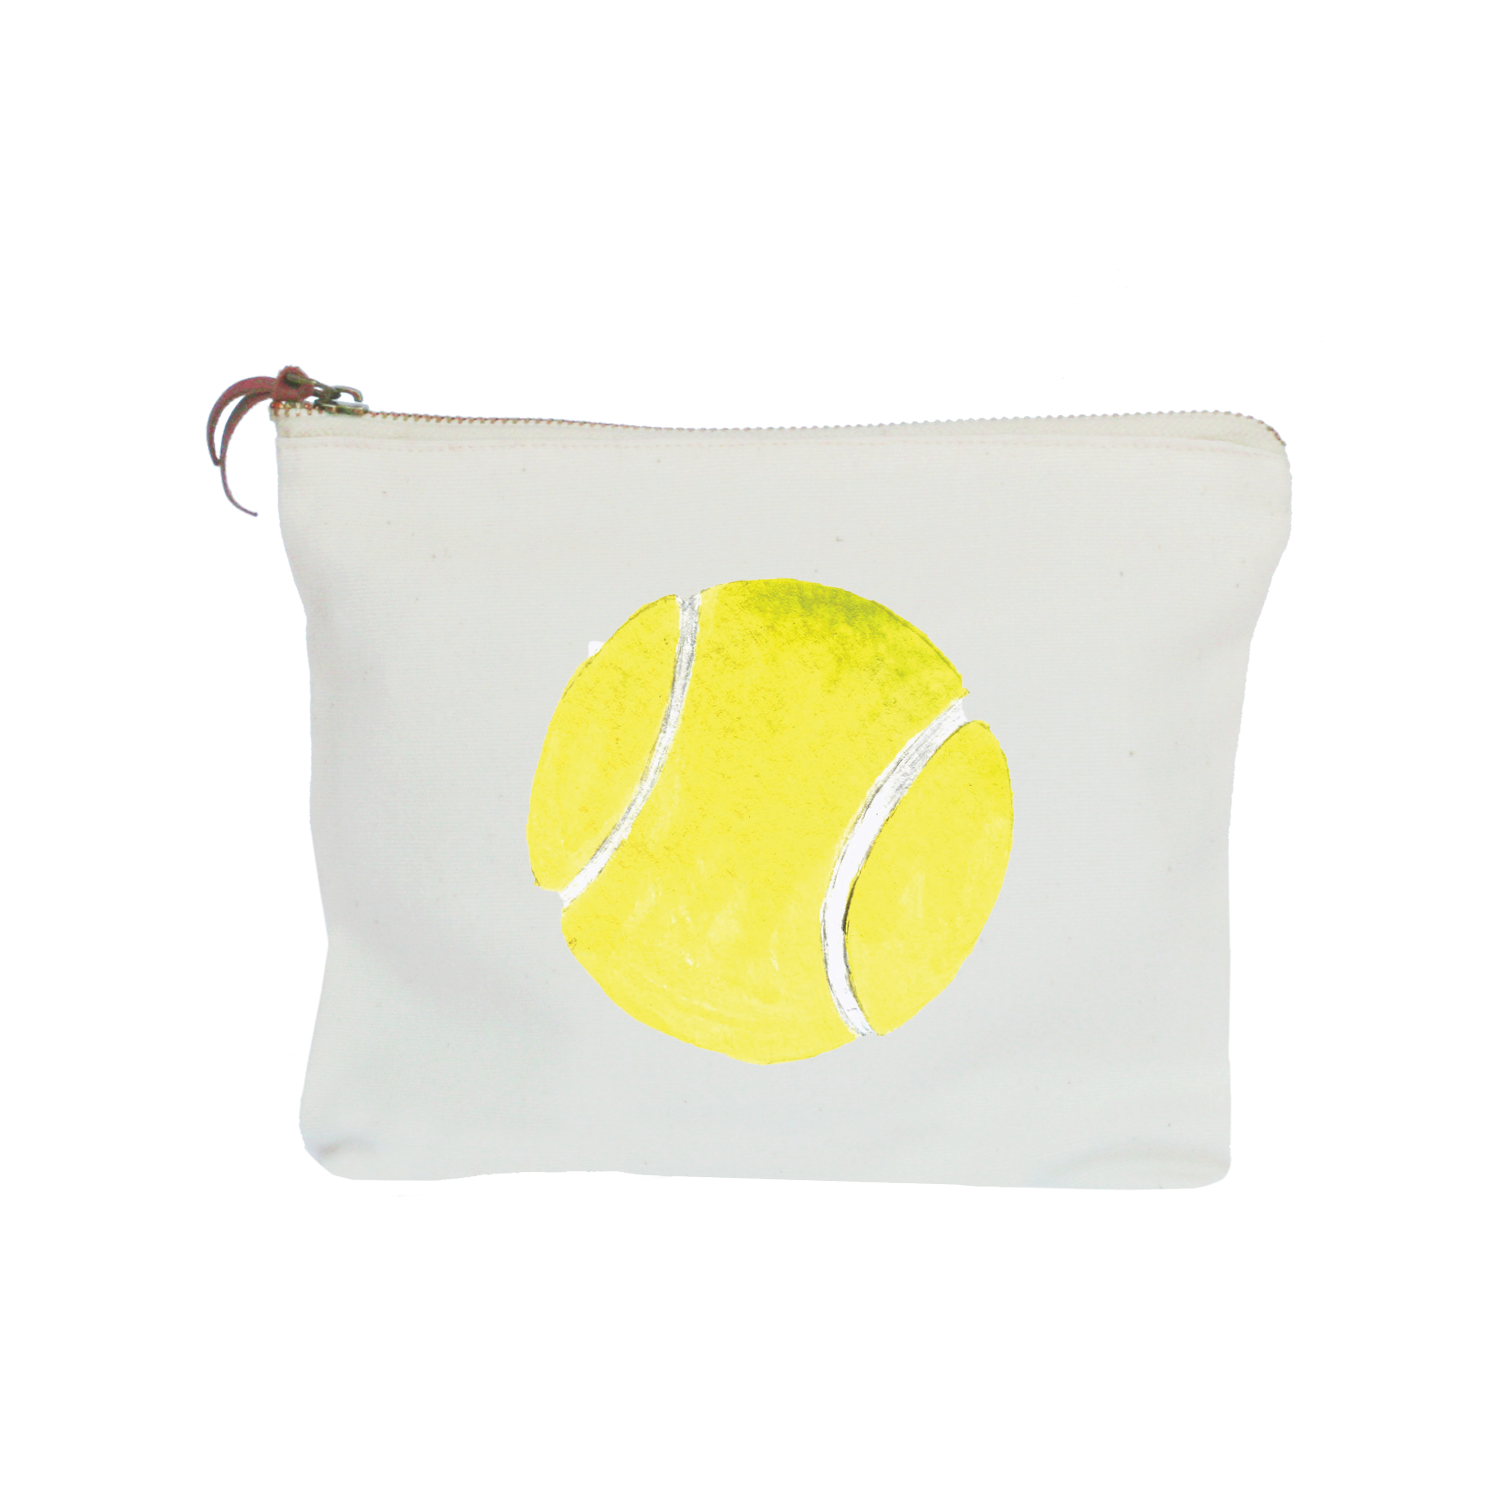 tennis ball zipper pouch